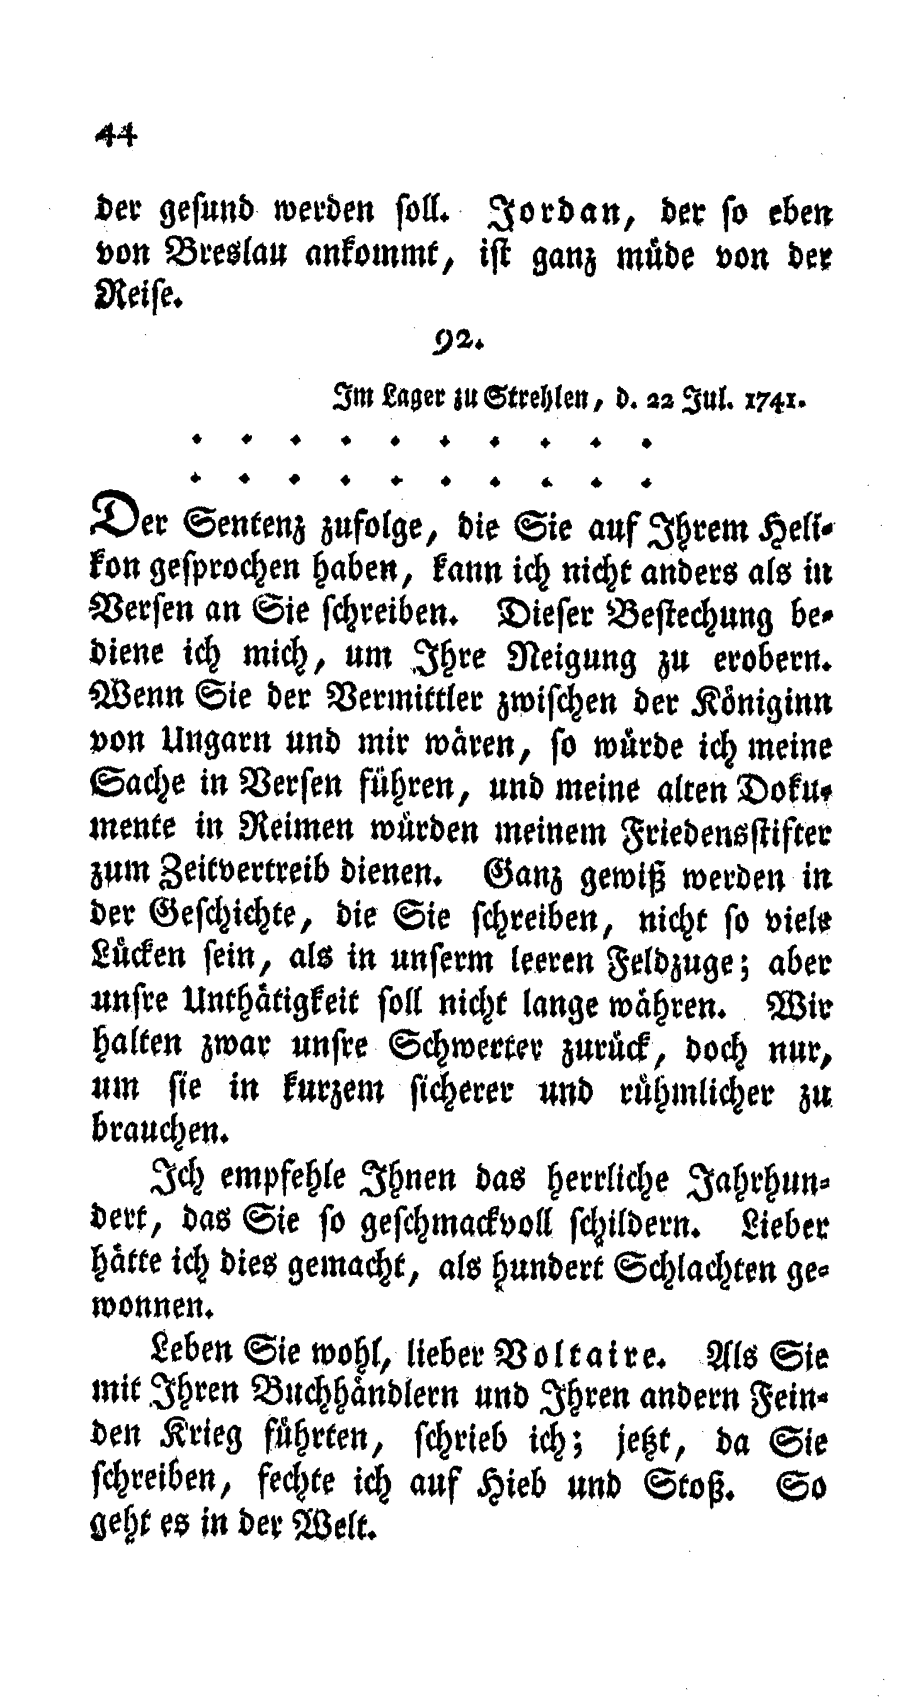 S. 44, Obj. 2